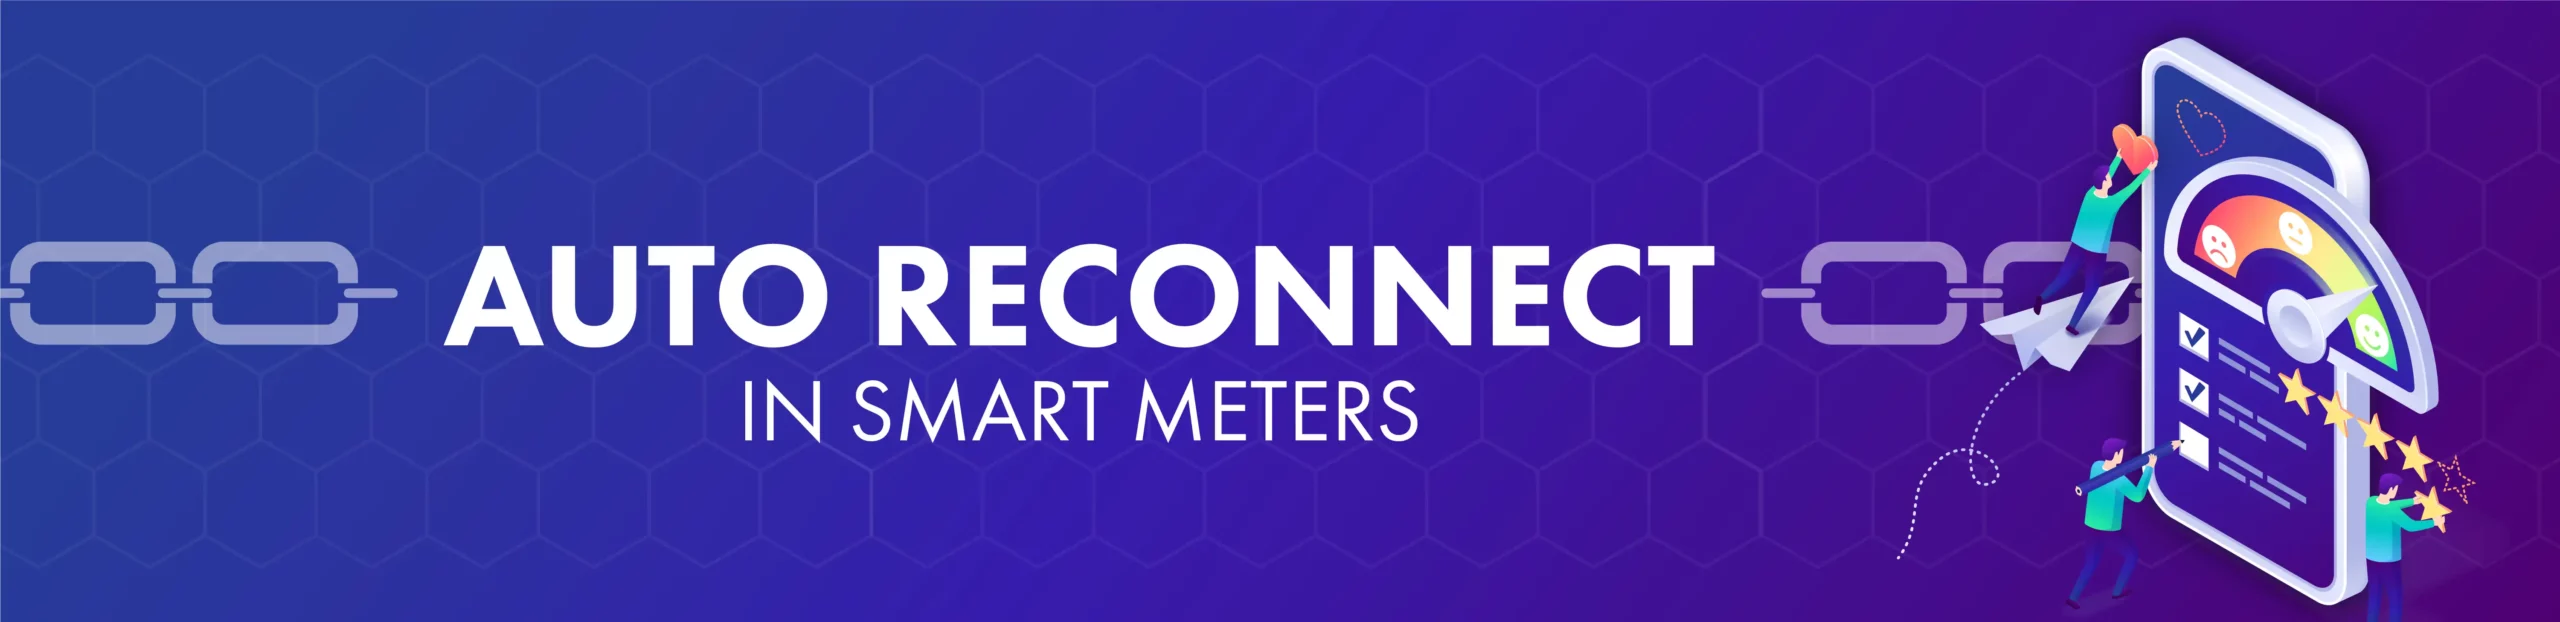 TEK Auto reconnect in smart meters